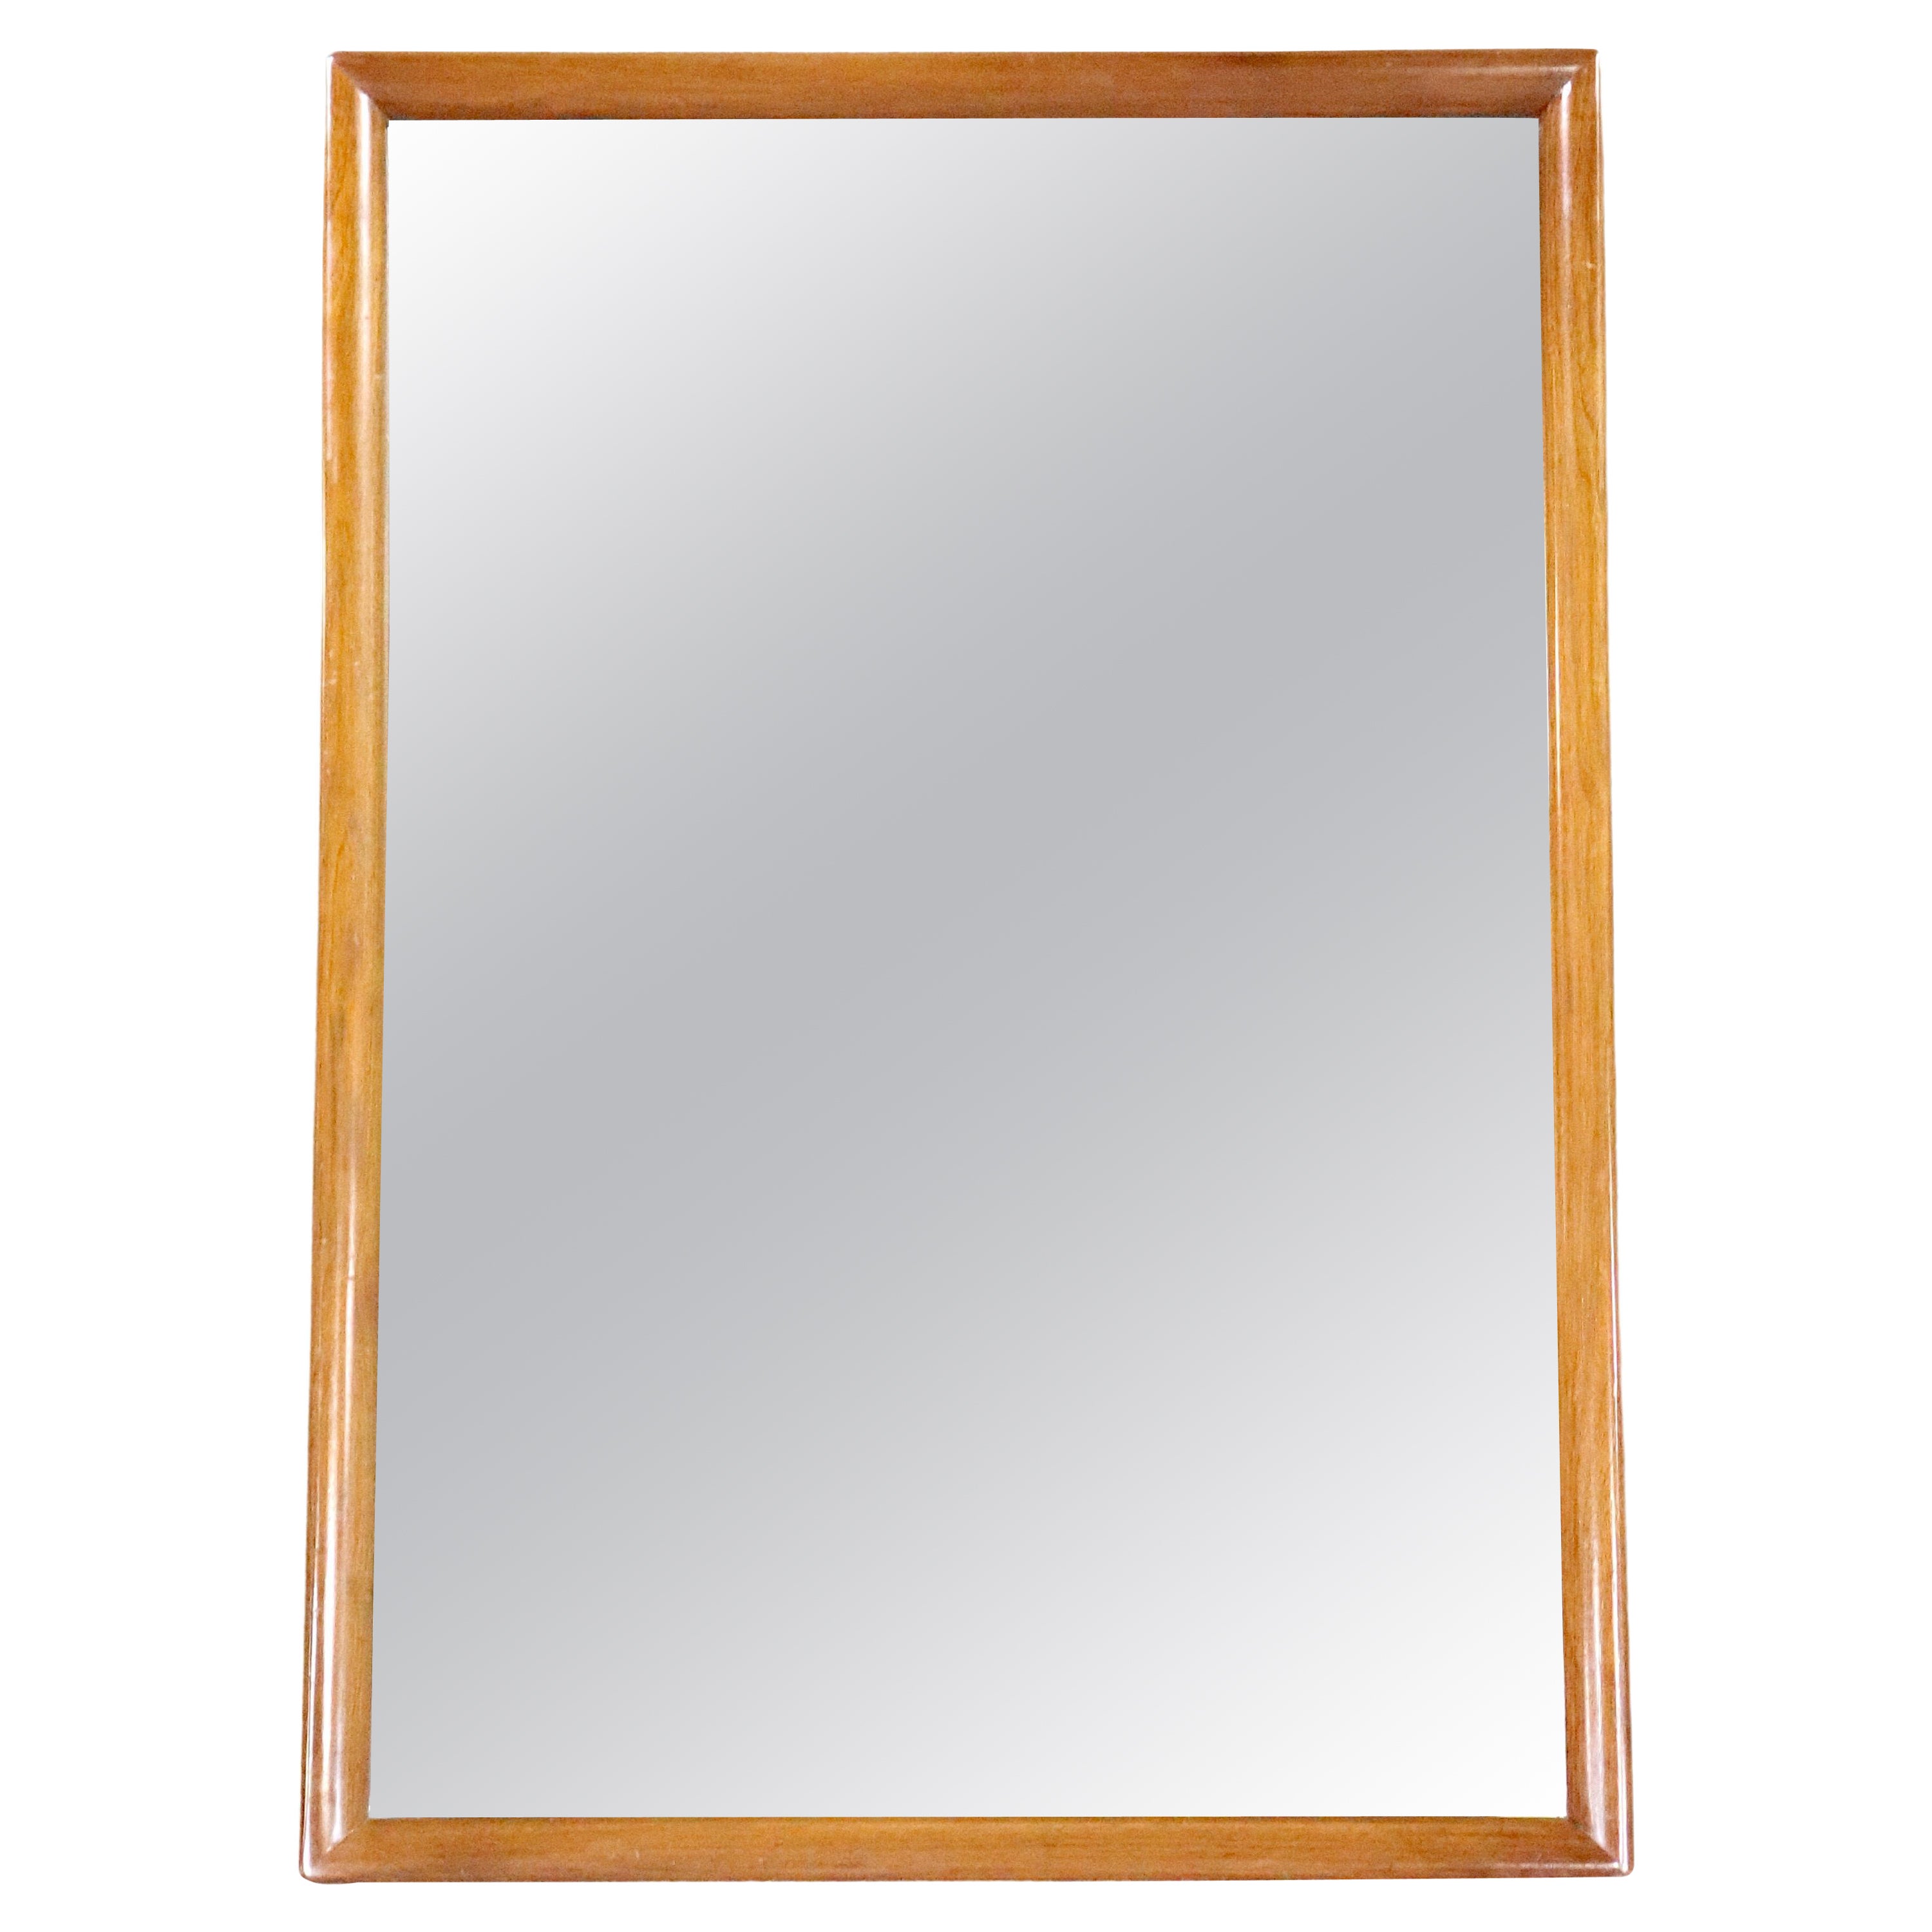 Walnut Framed Wall Mirror For Sale